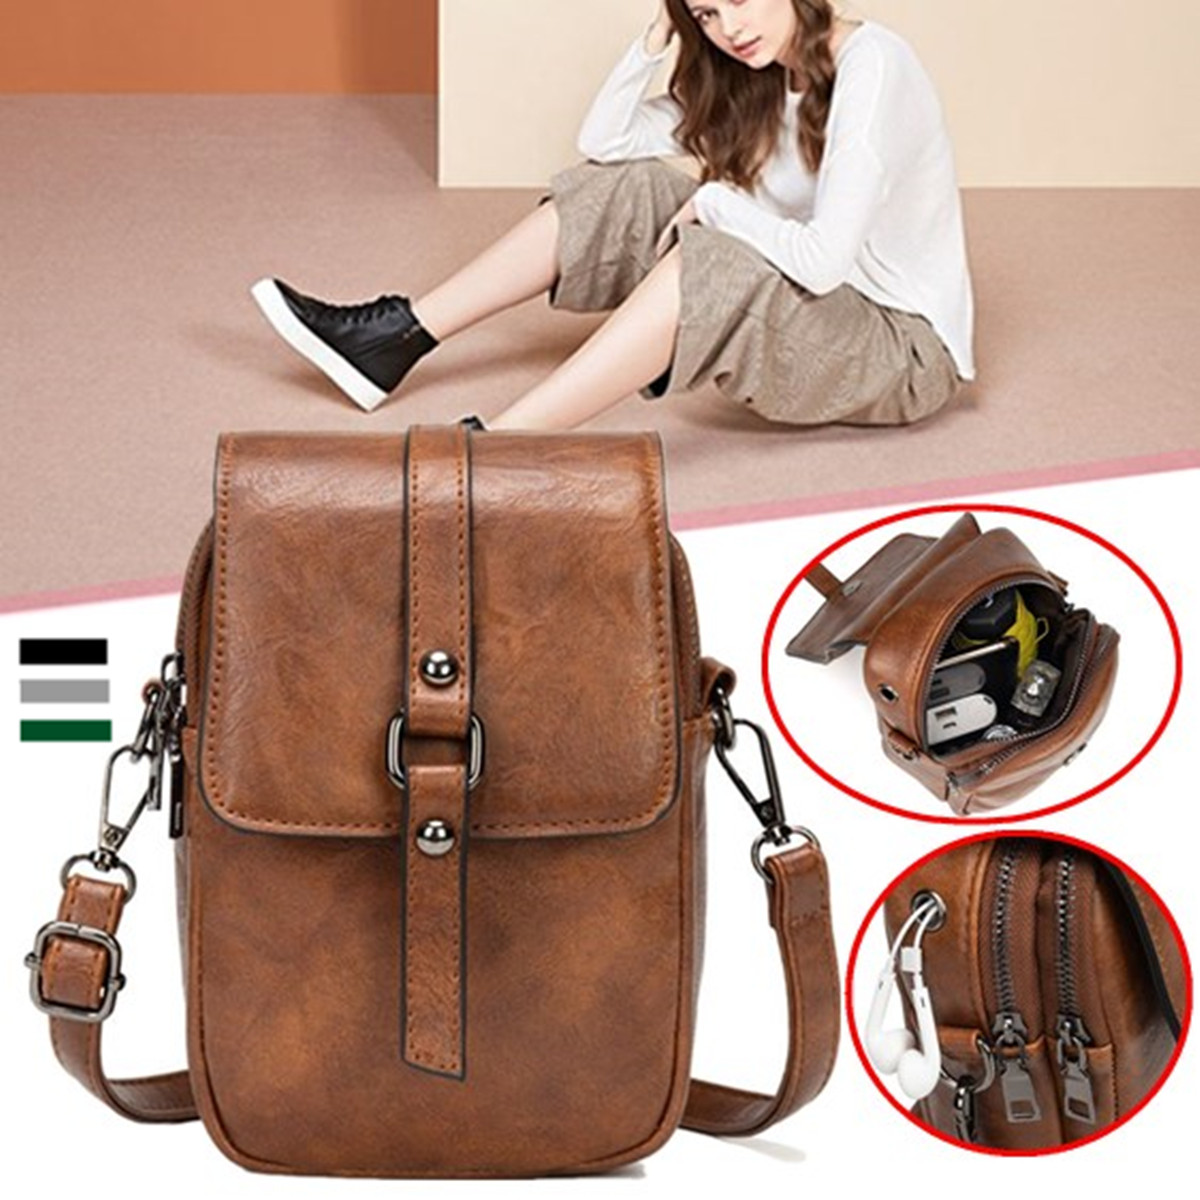 Vintage-Large-Capacity-Phone-Bag-Crossbody-Bag-Shoulder-Bag-With-Detachable-Strap-1534073-1